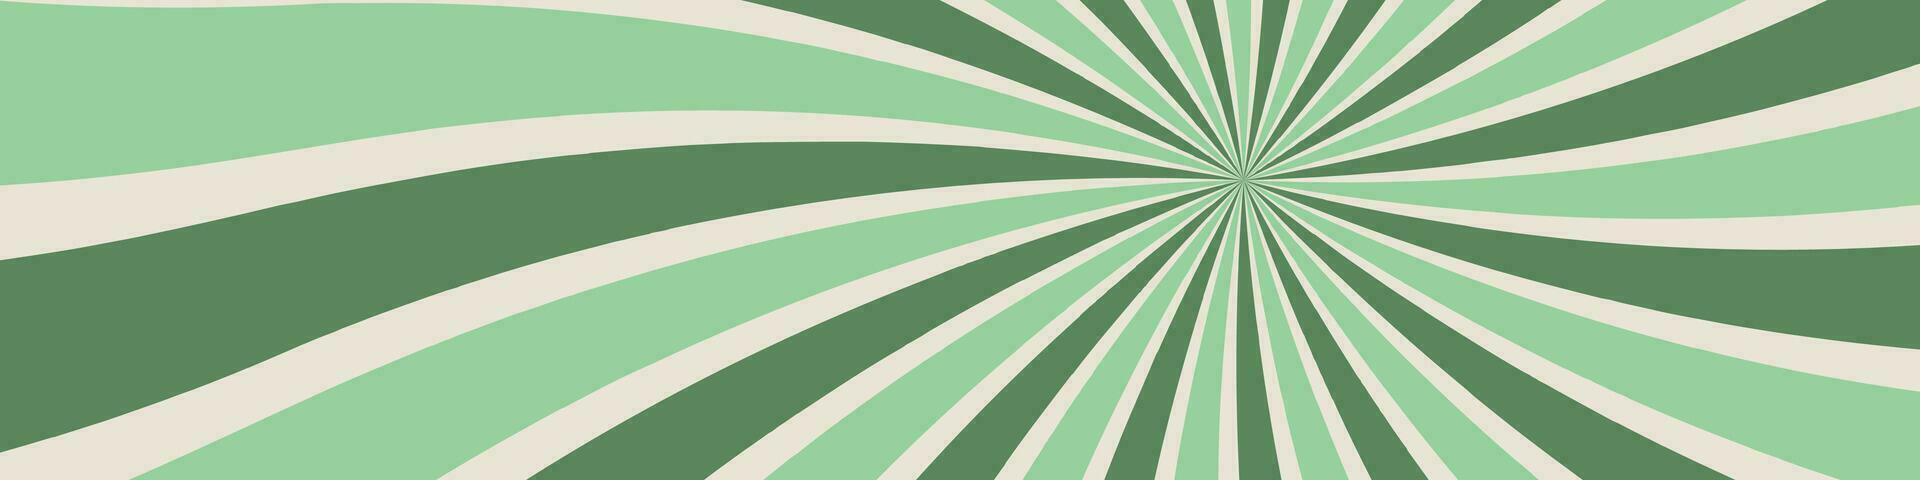 häftig Sol bakgrund, 70s retro vibrafon. karneval cirkel grafik med årgång virvlar, strålar, och regnbåge abstracts på grön bakgrund. platt vektor illustration isolerat